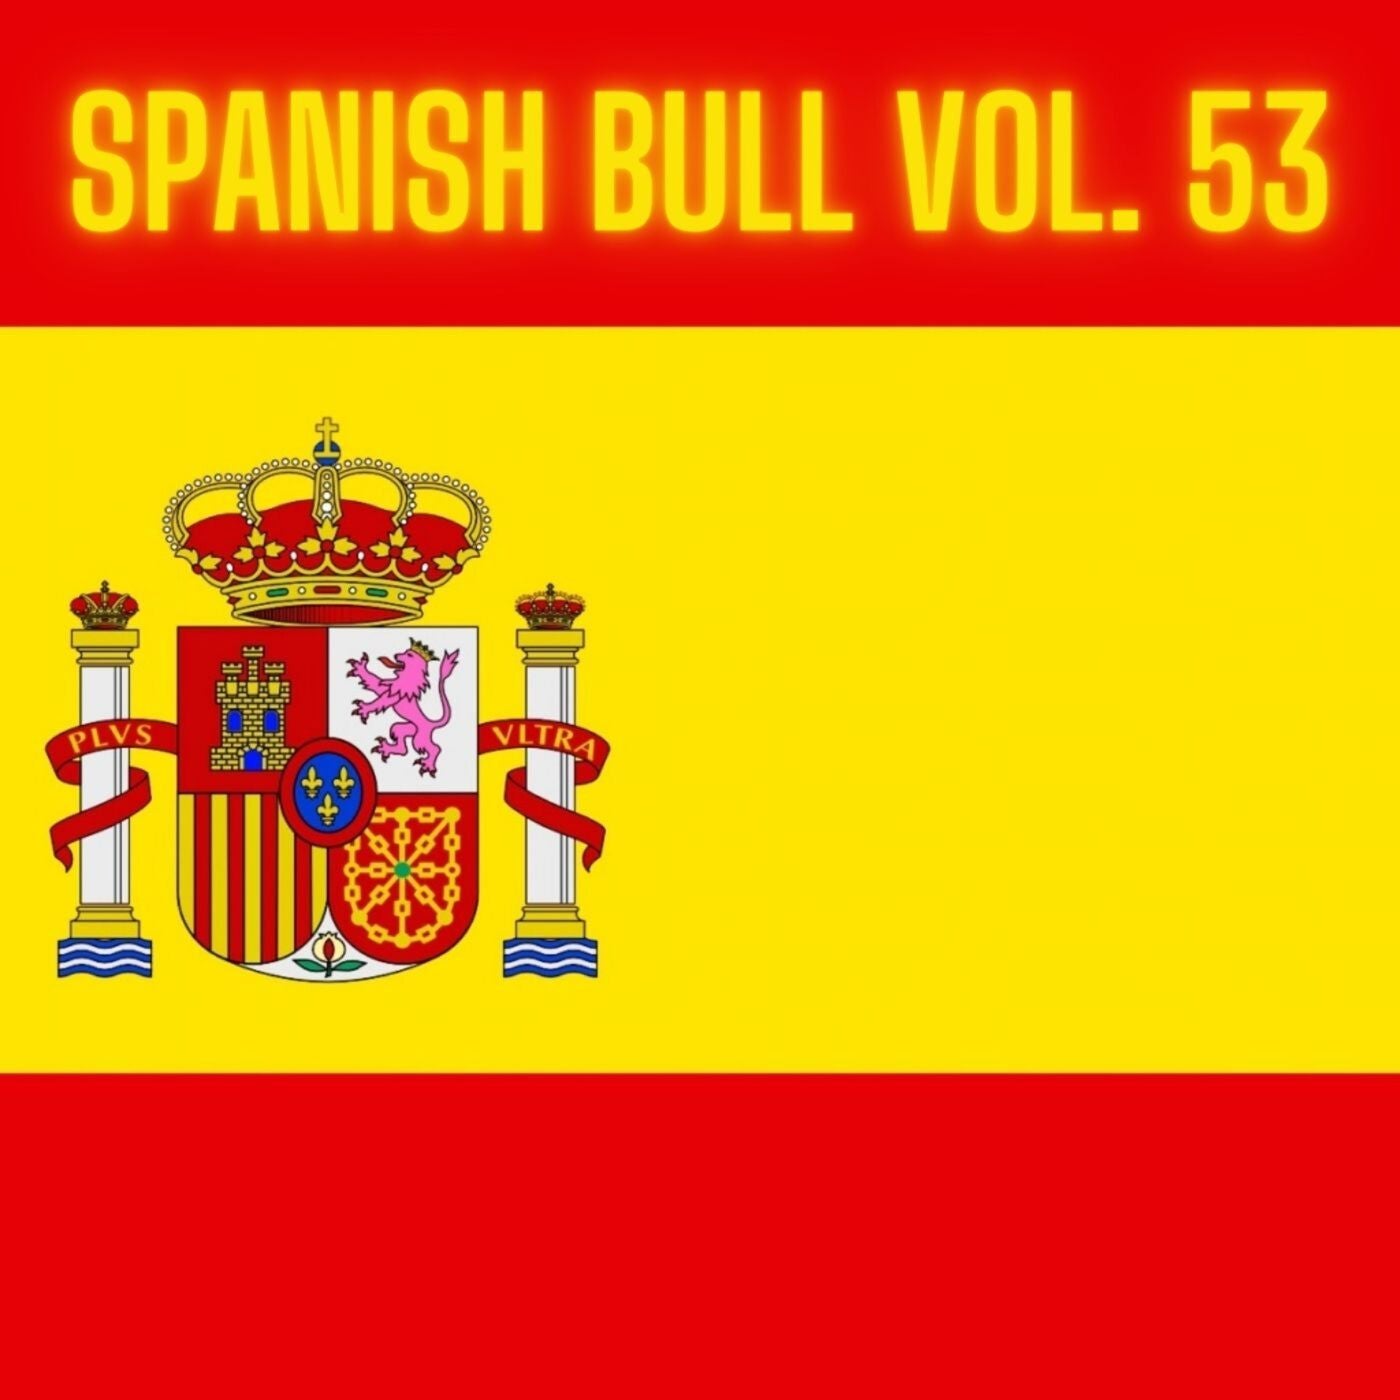 Spanish Bull Vol. 53